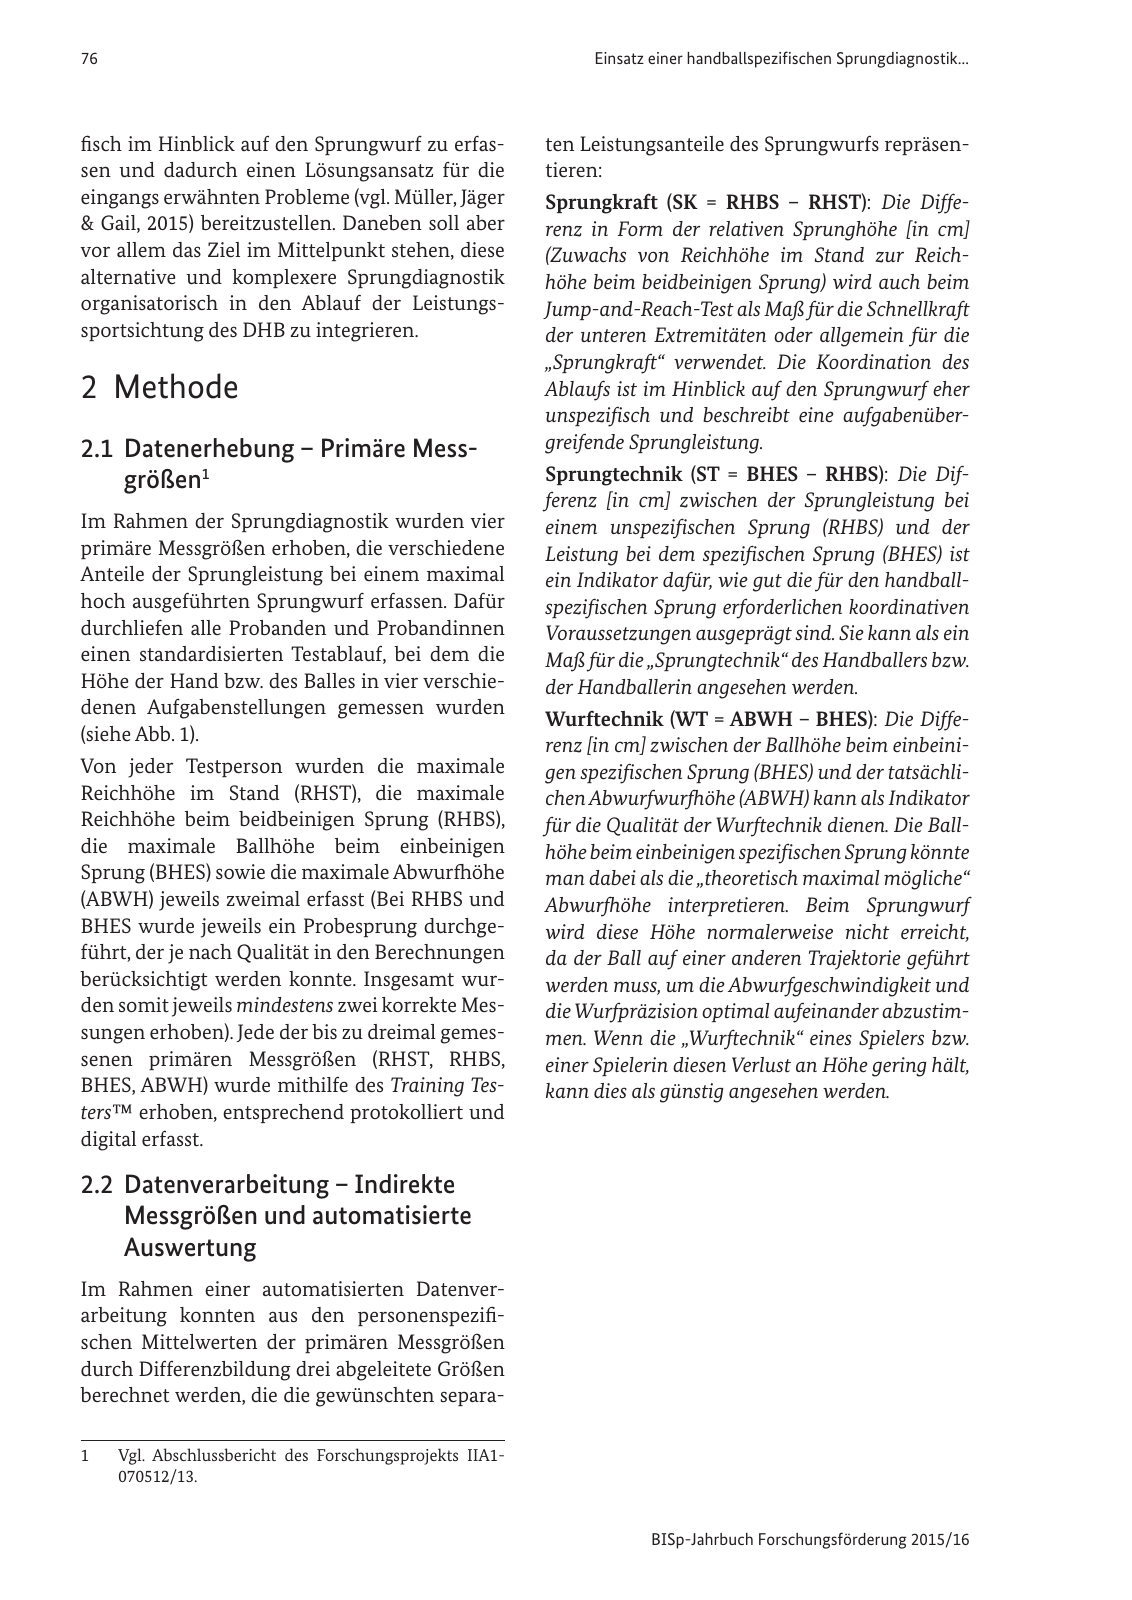 Vorschau BISp-Jahrbuch Forschungsförderung 2015/16 Seite 78